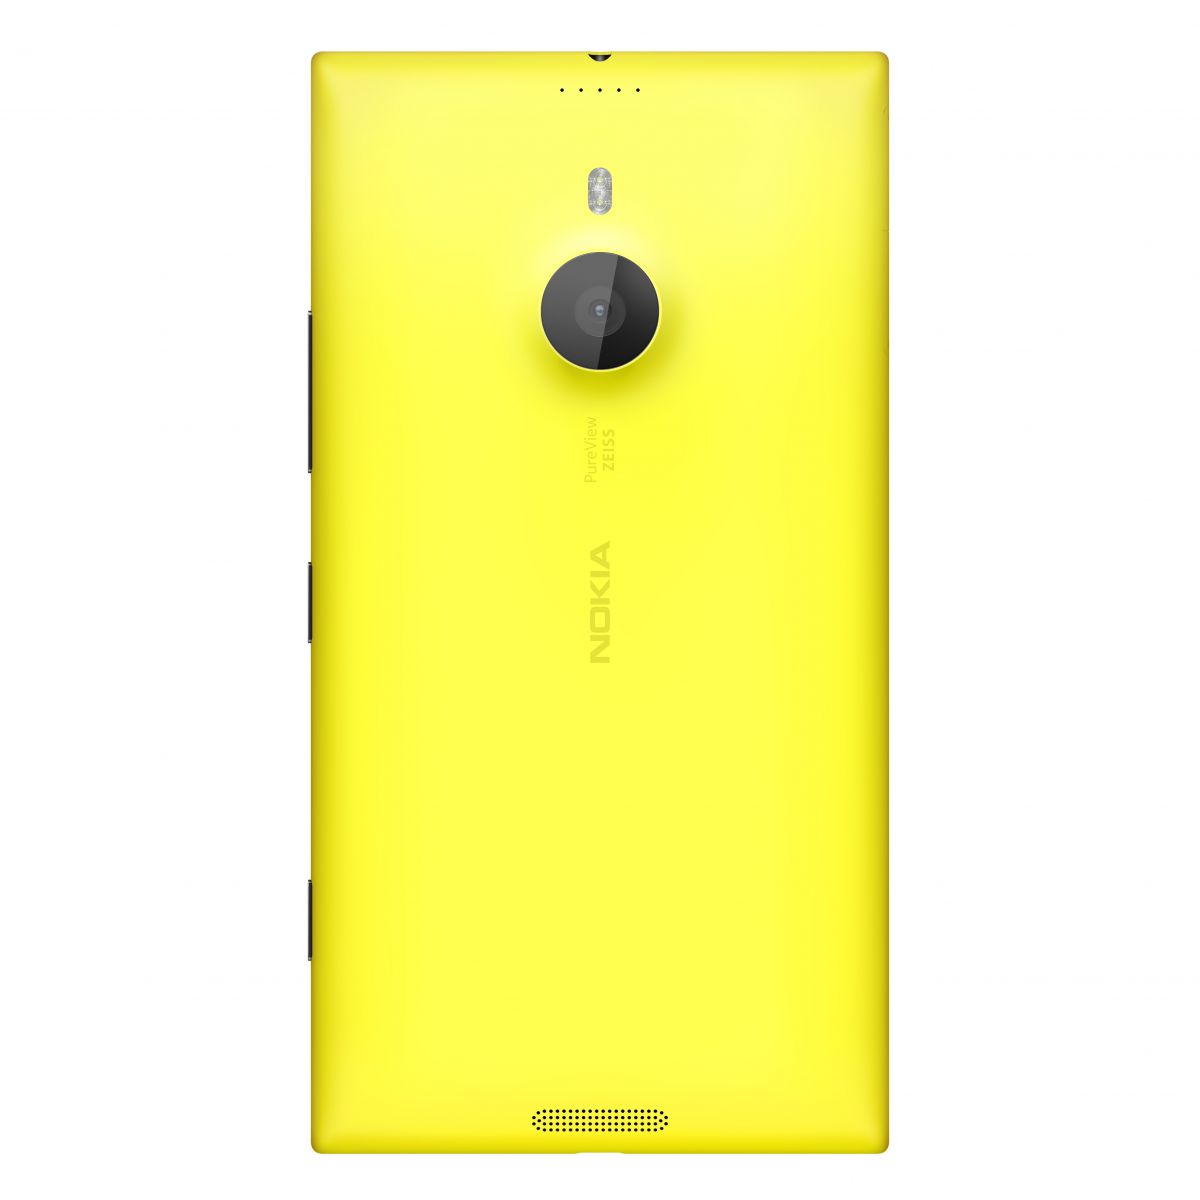 1200-nokia-lumia-1520-yellow-back.jpg